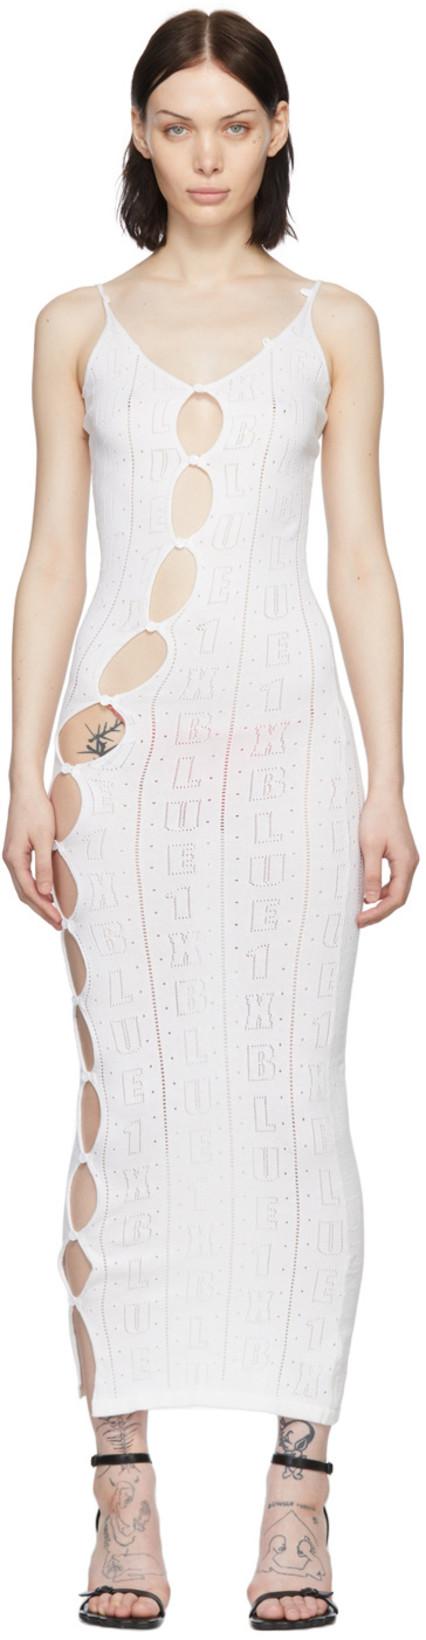 SSENSE Exclusive White Cotton Midi Dress by 1XBLUE